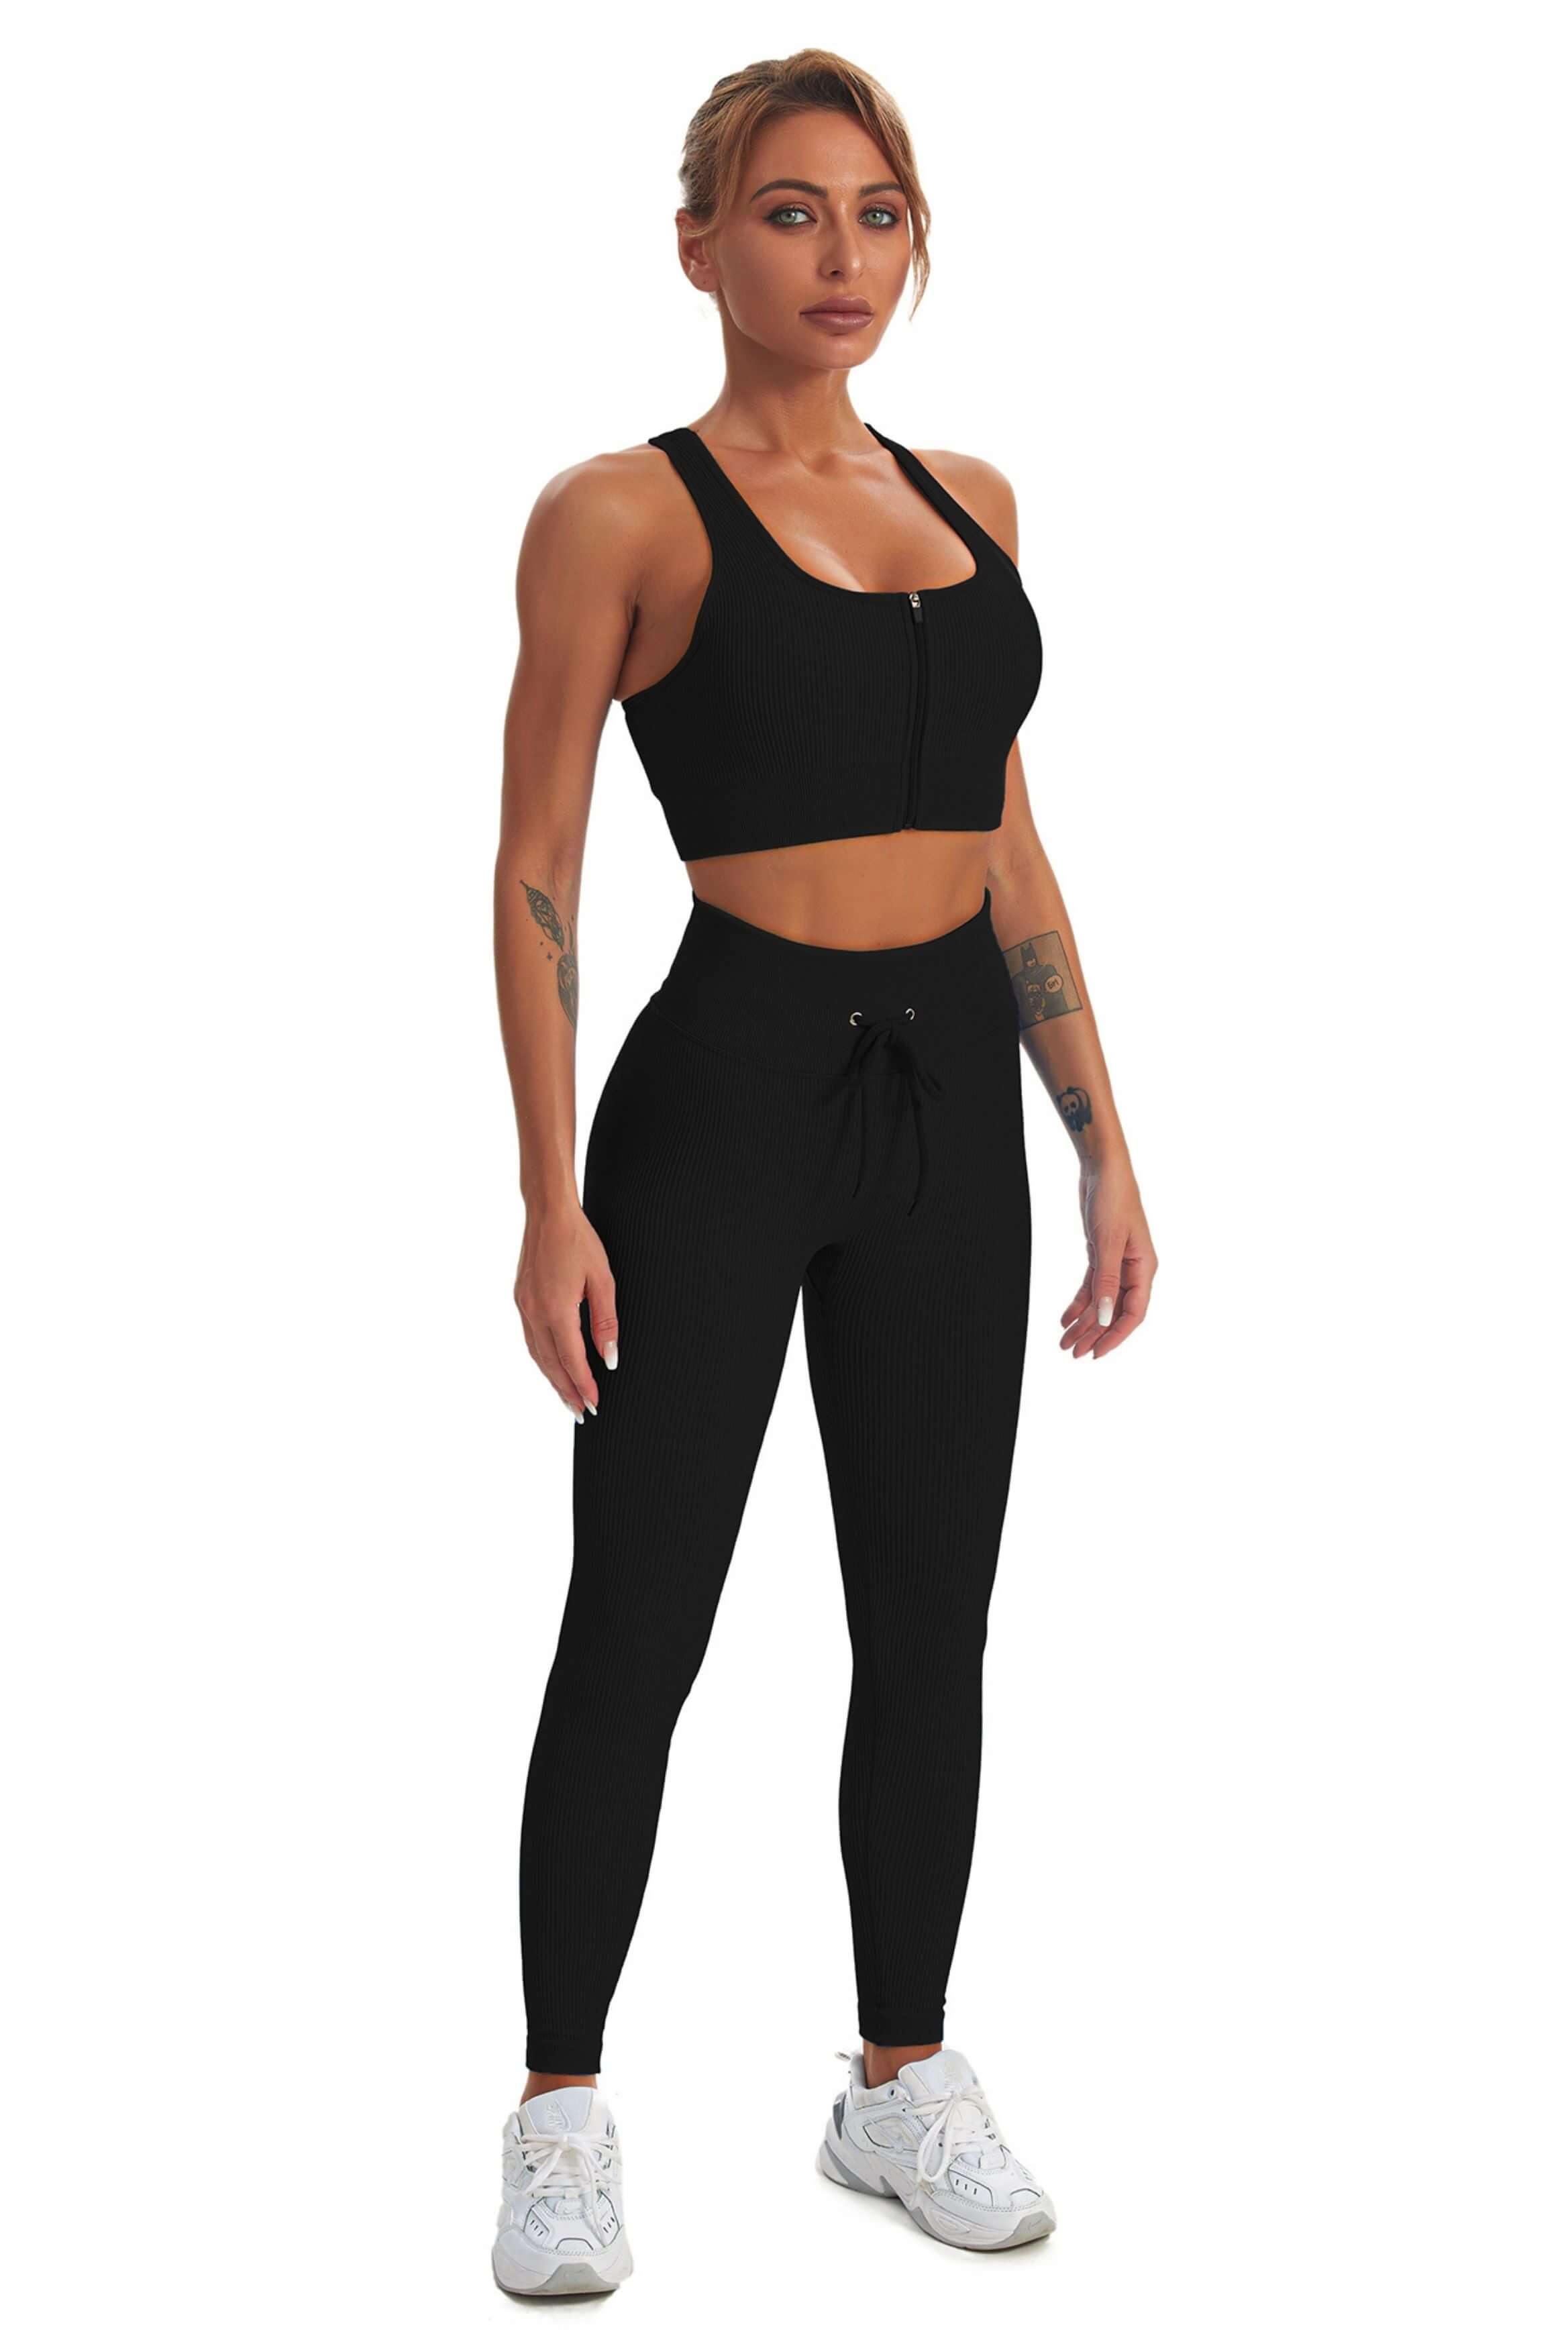 2 Piece Gym High Waist Running Shorts Crop Tank Yoga Sets Workout Sets for  Women Sport Bra Seamless Workout Sets WINE RED XL 